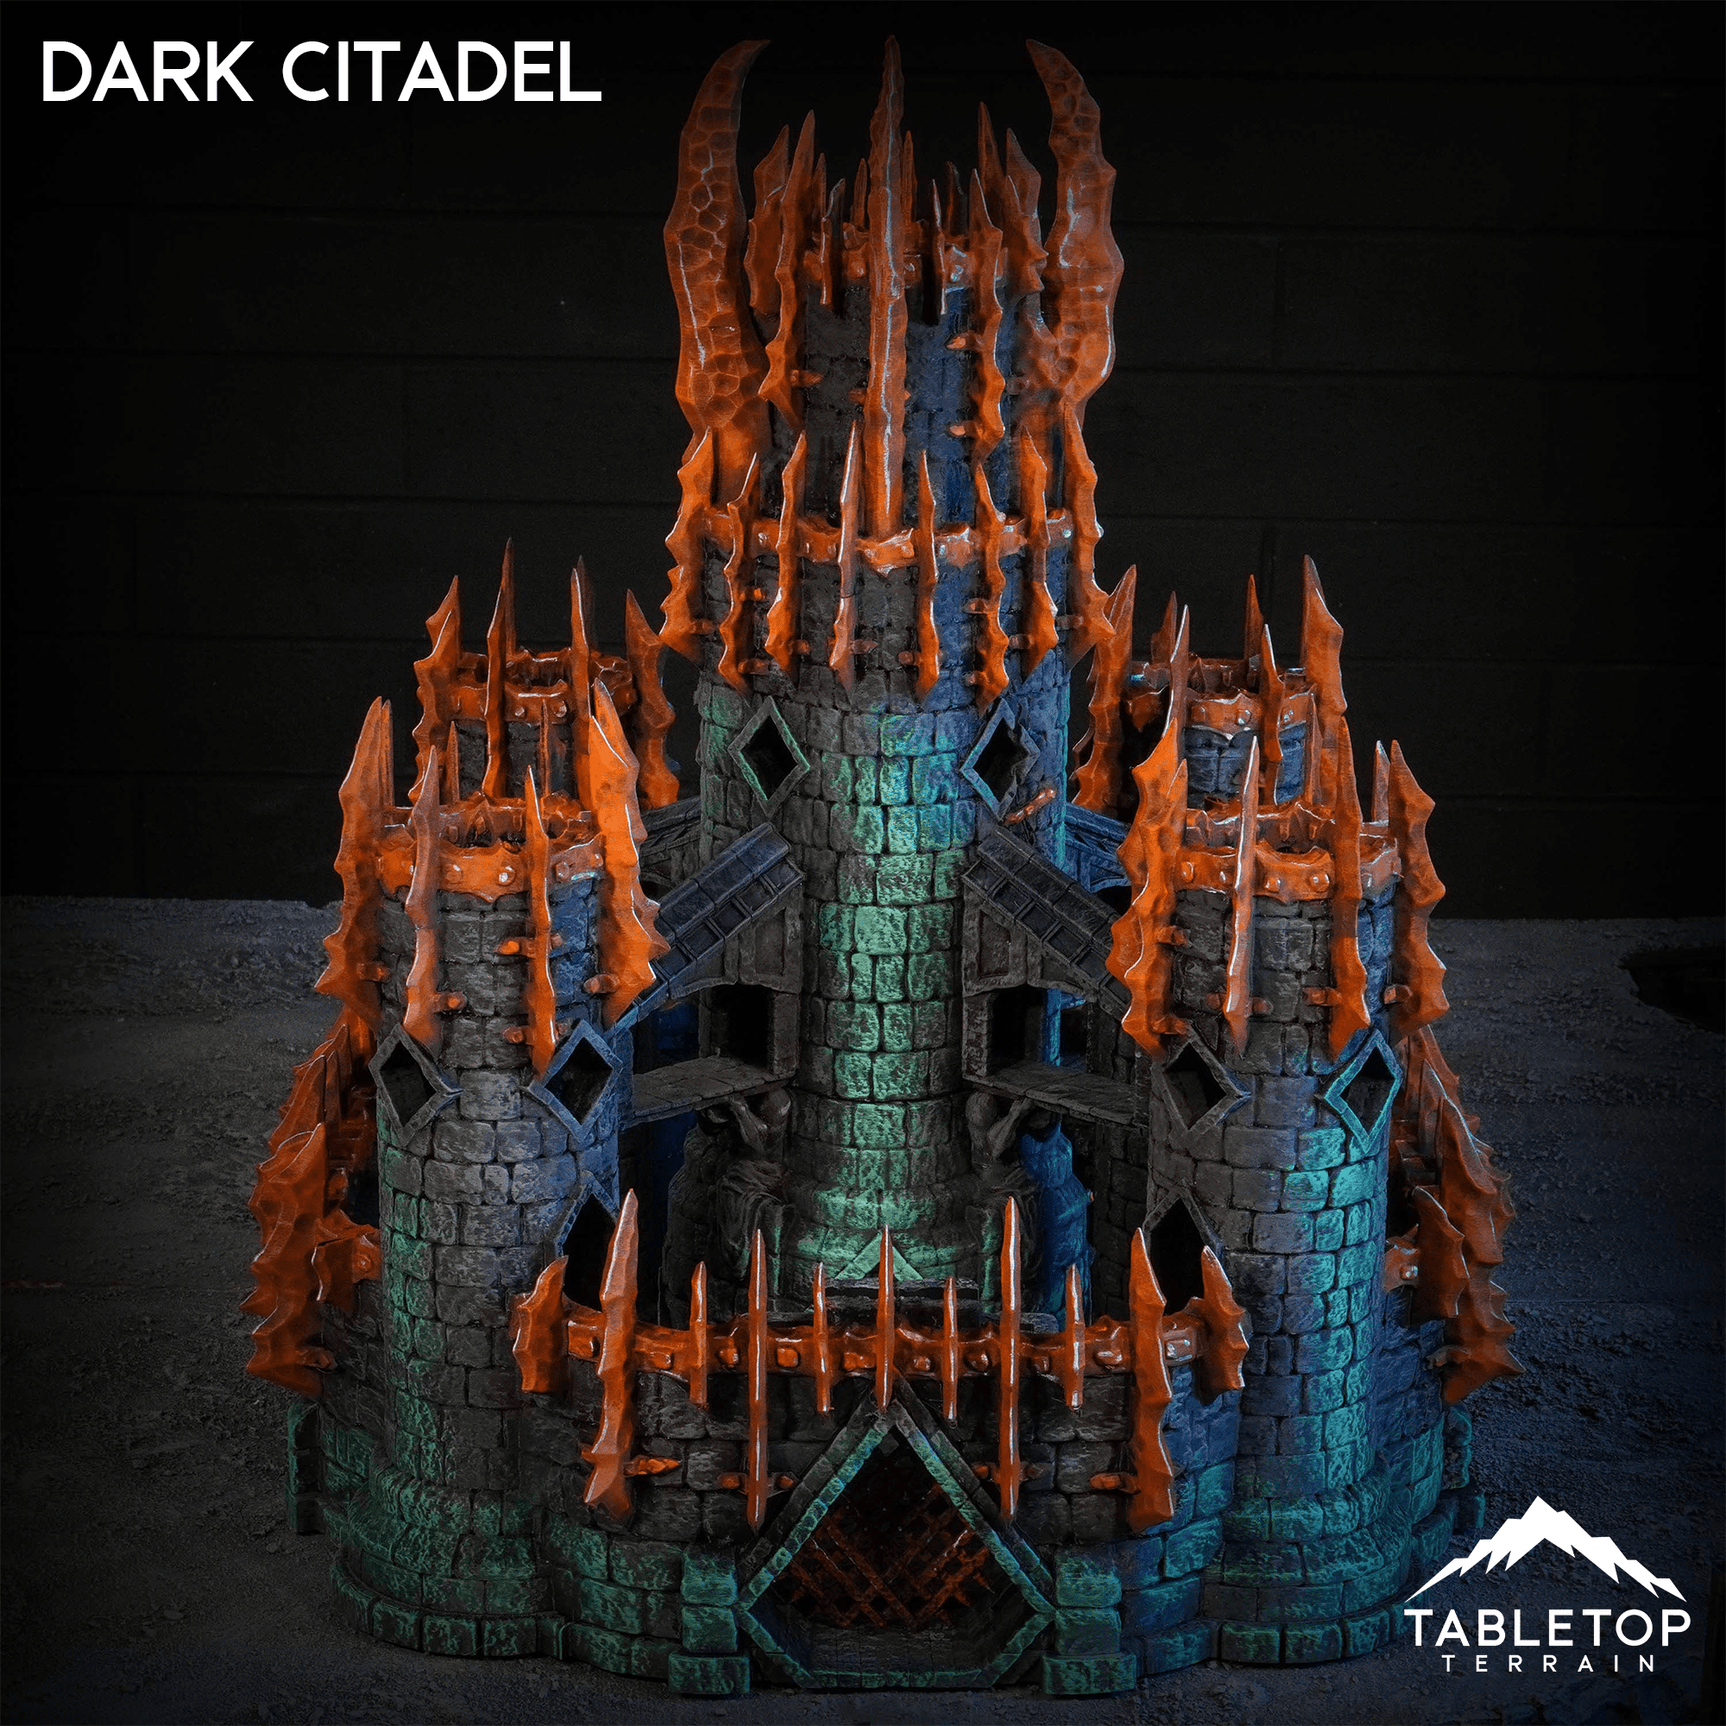 Dark Citadel - Kingdom of Azragor